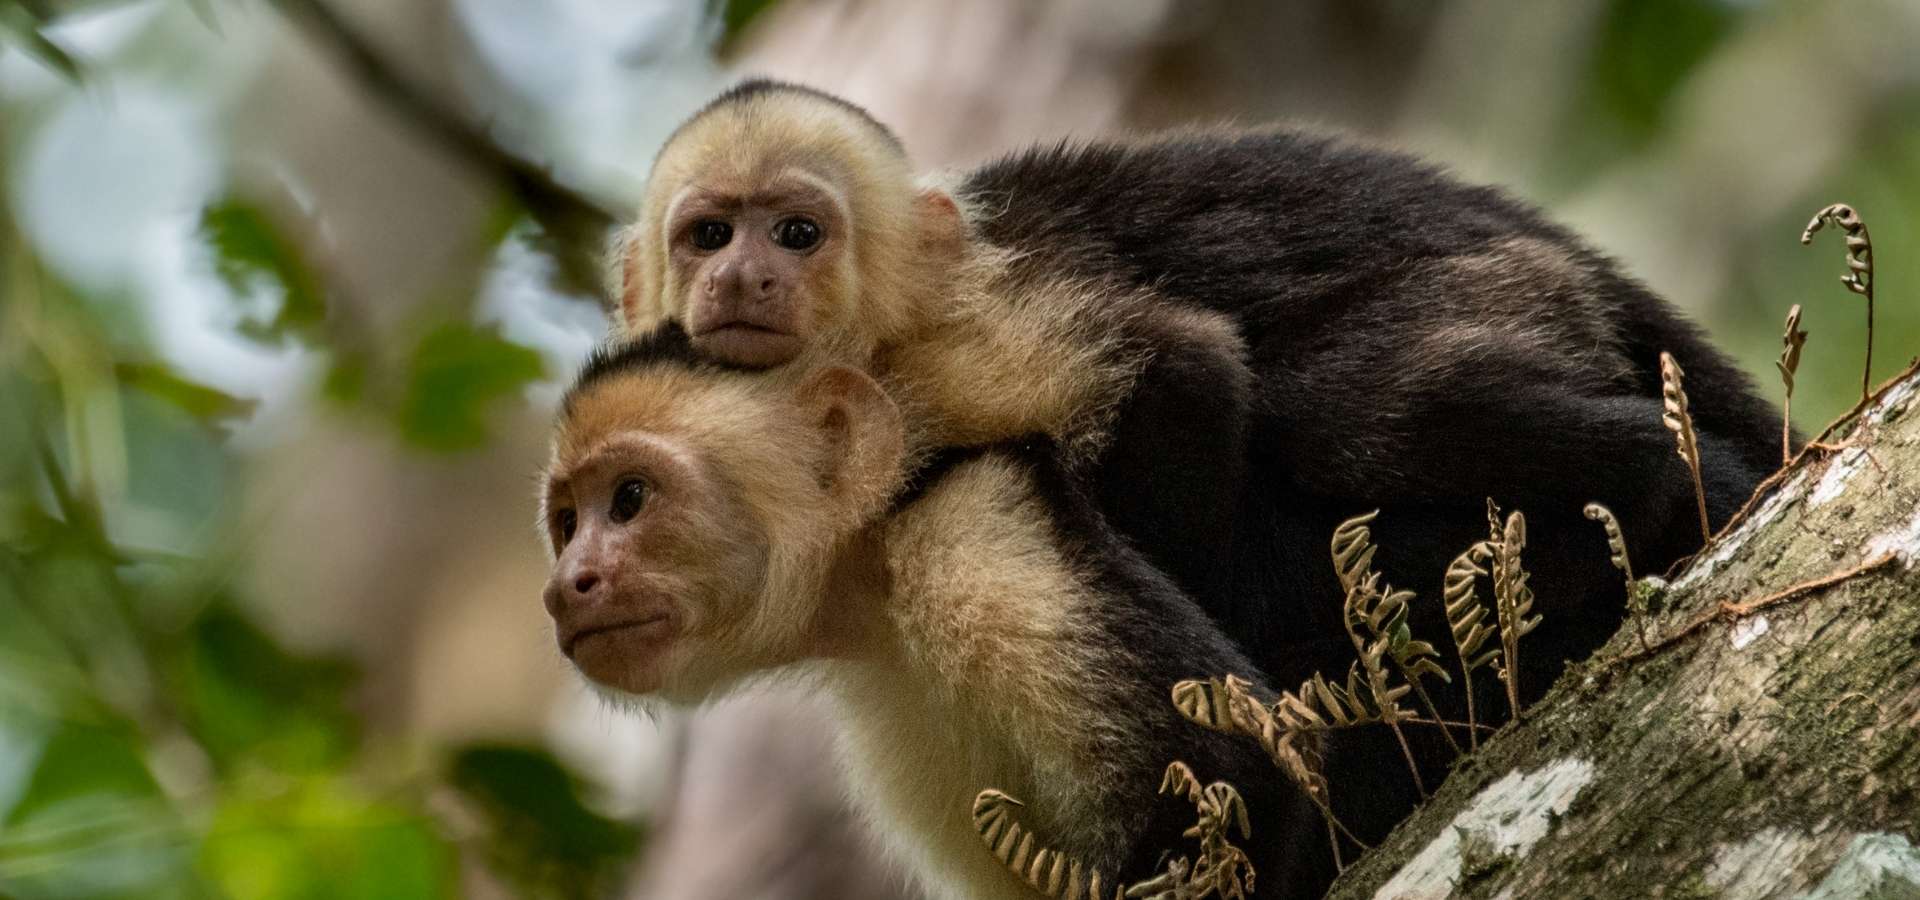 Costa Rican luontomatka - Kapusiini apinoita